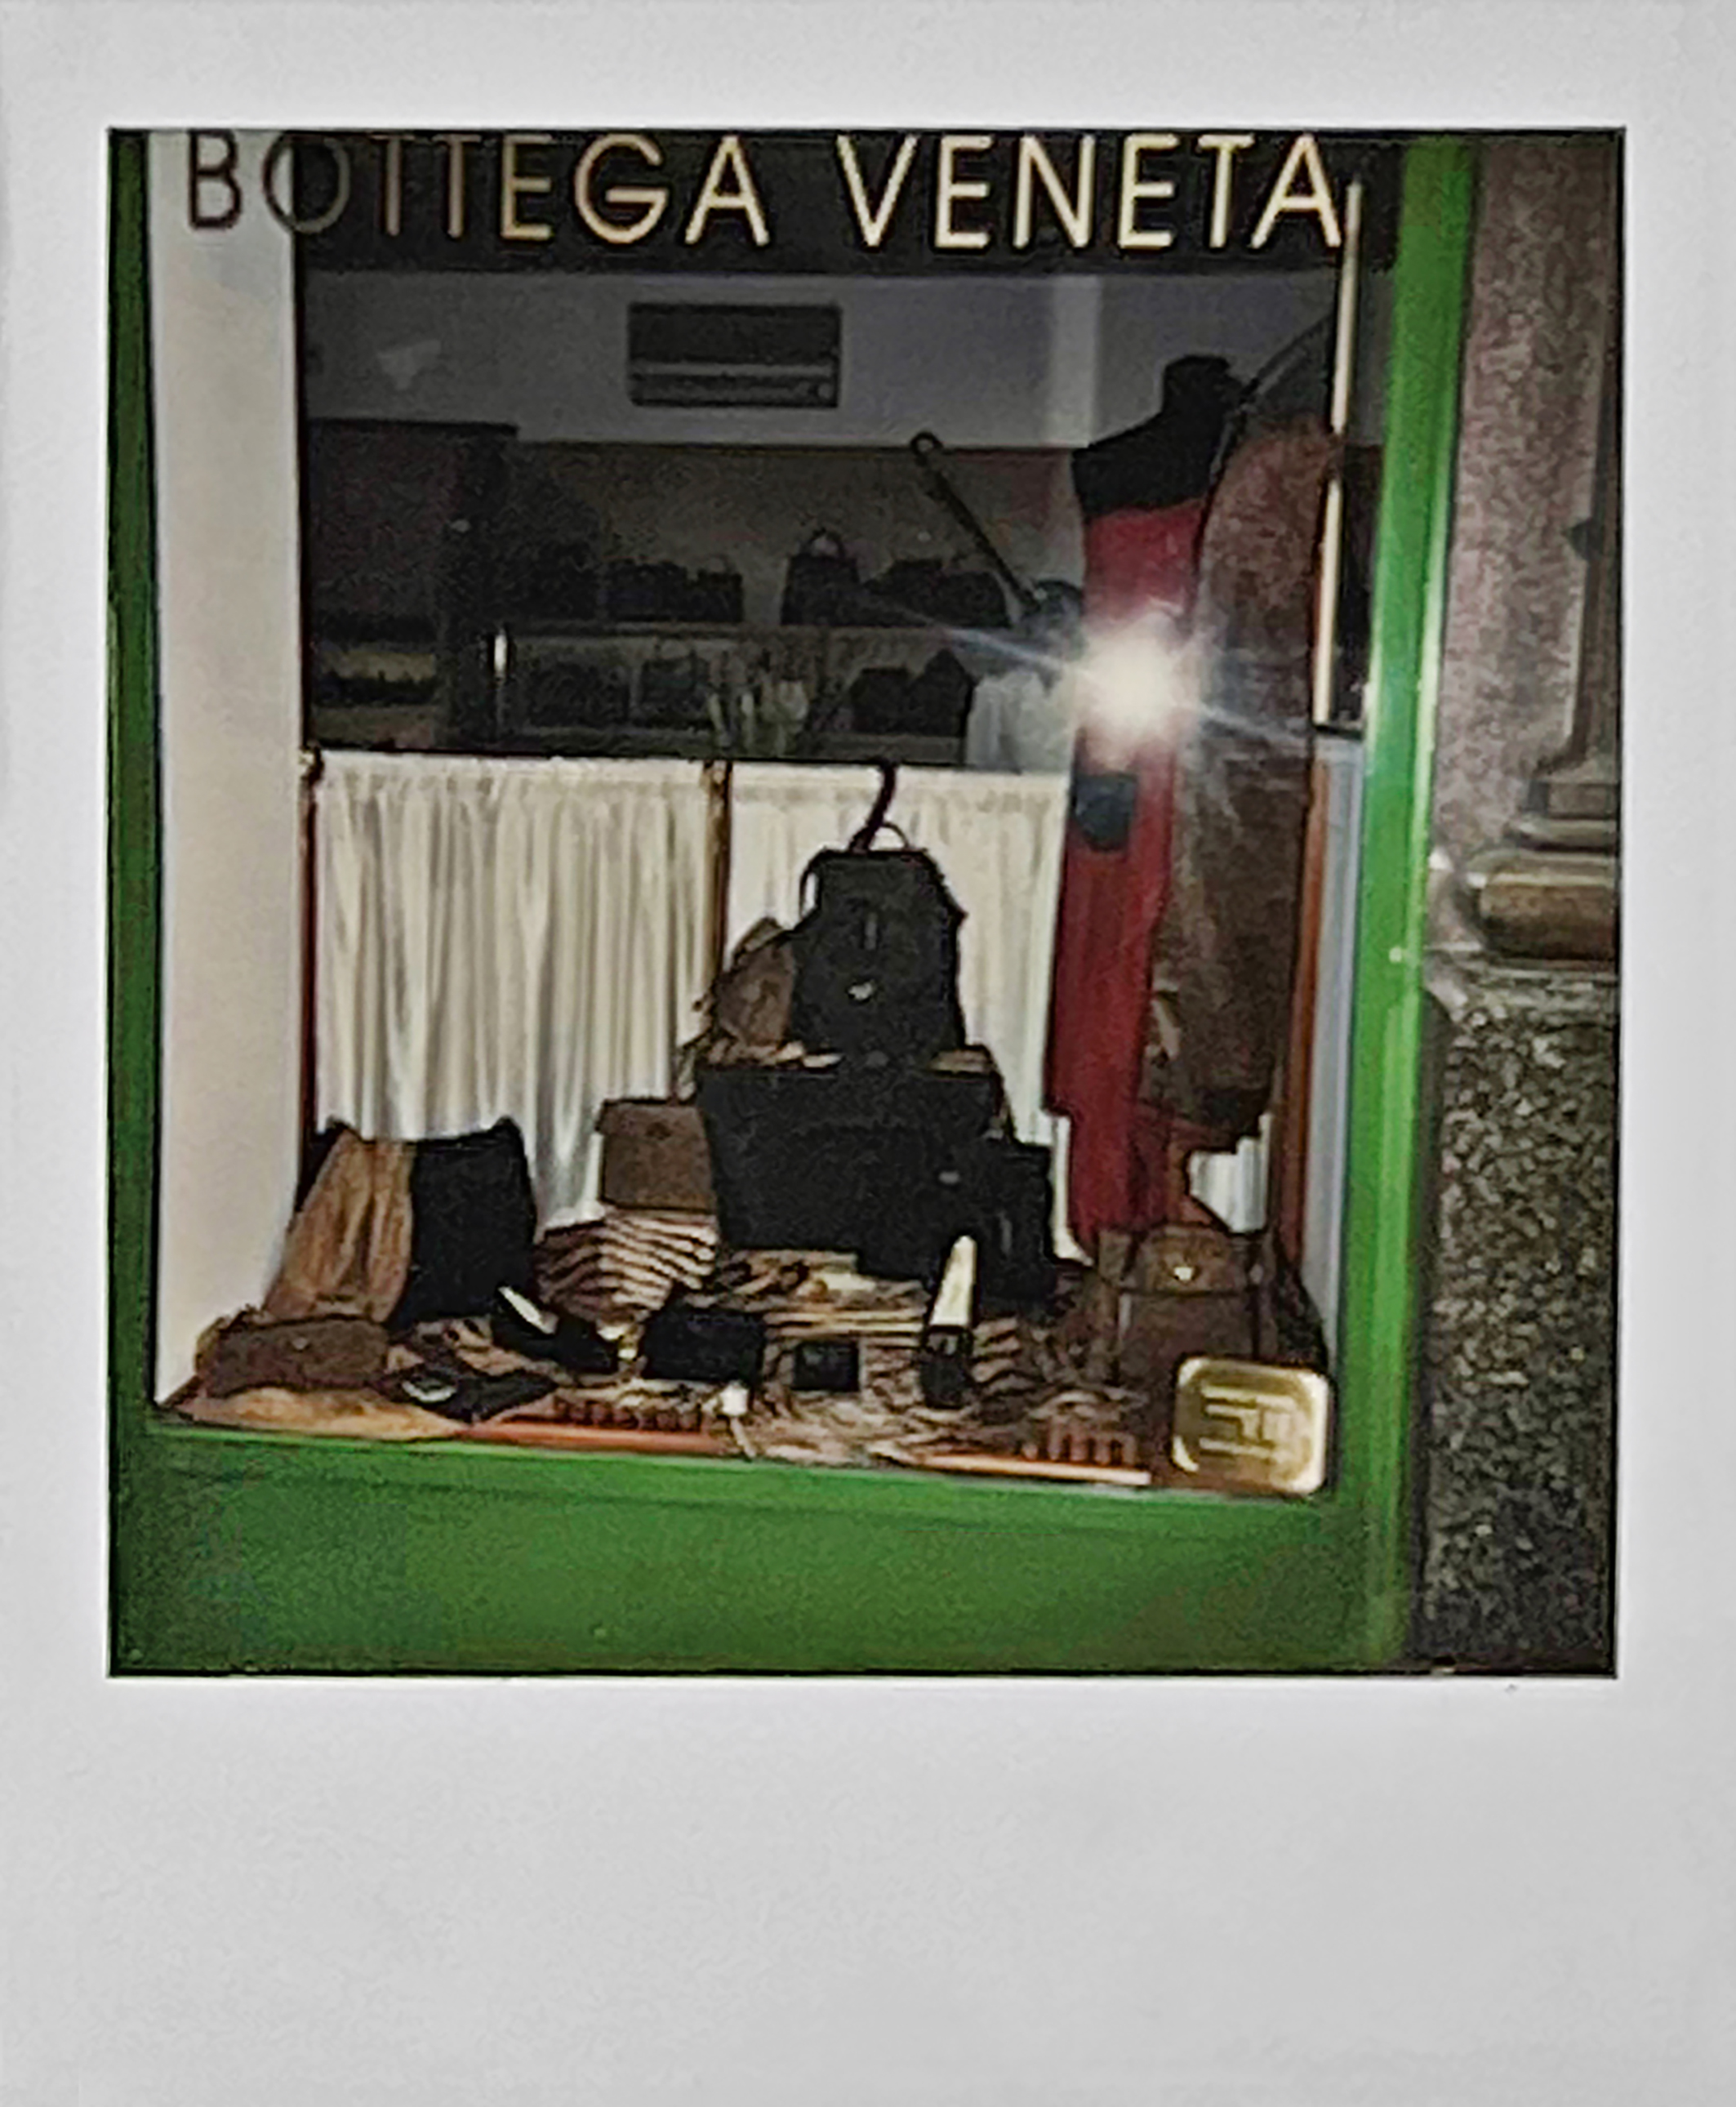 Polaroid from 1995 from the Bottega Veneta Vienna store